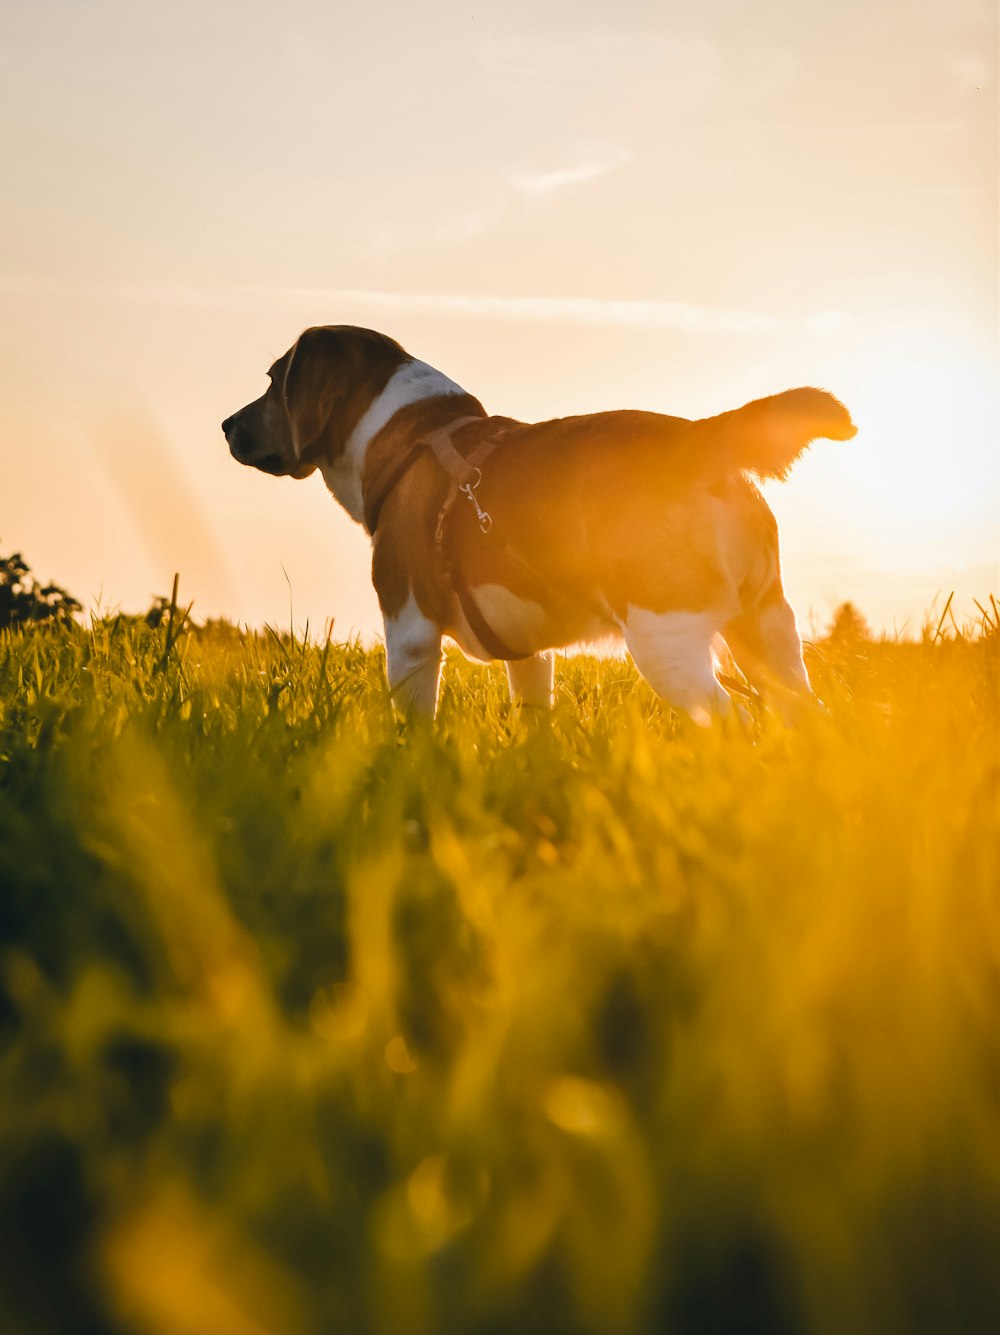 cane a pelo corto marrone e bianco sul campo di erba verde durante il giorno